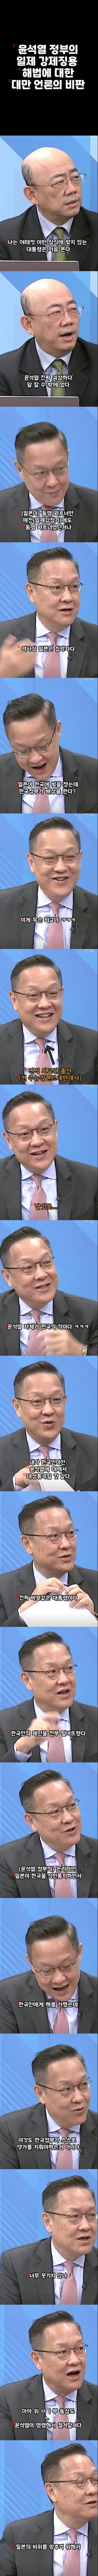 元ニュージーランド台湾大使の尹錫悦自体が韓国の敵だ。